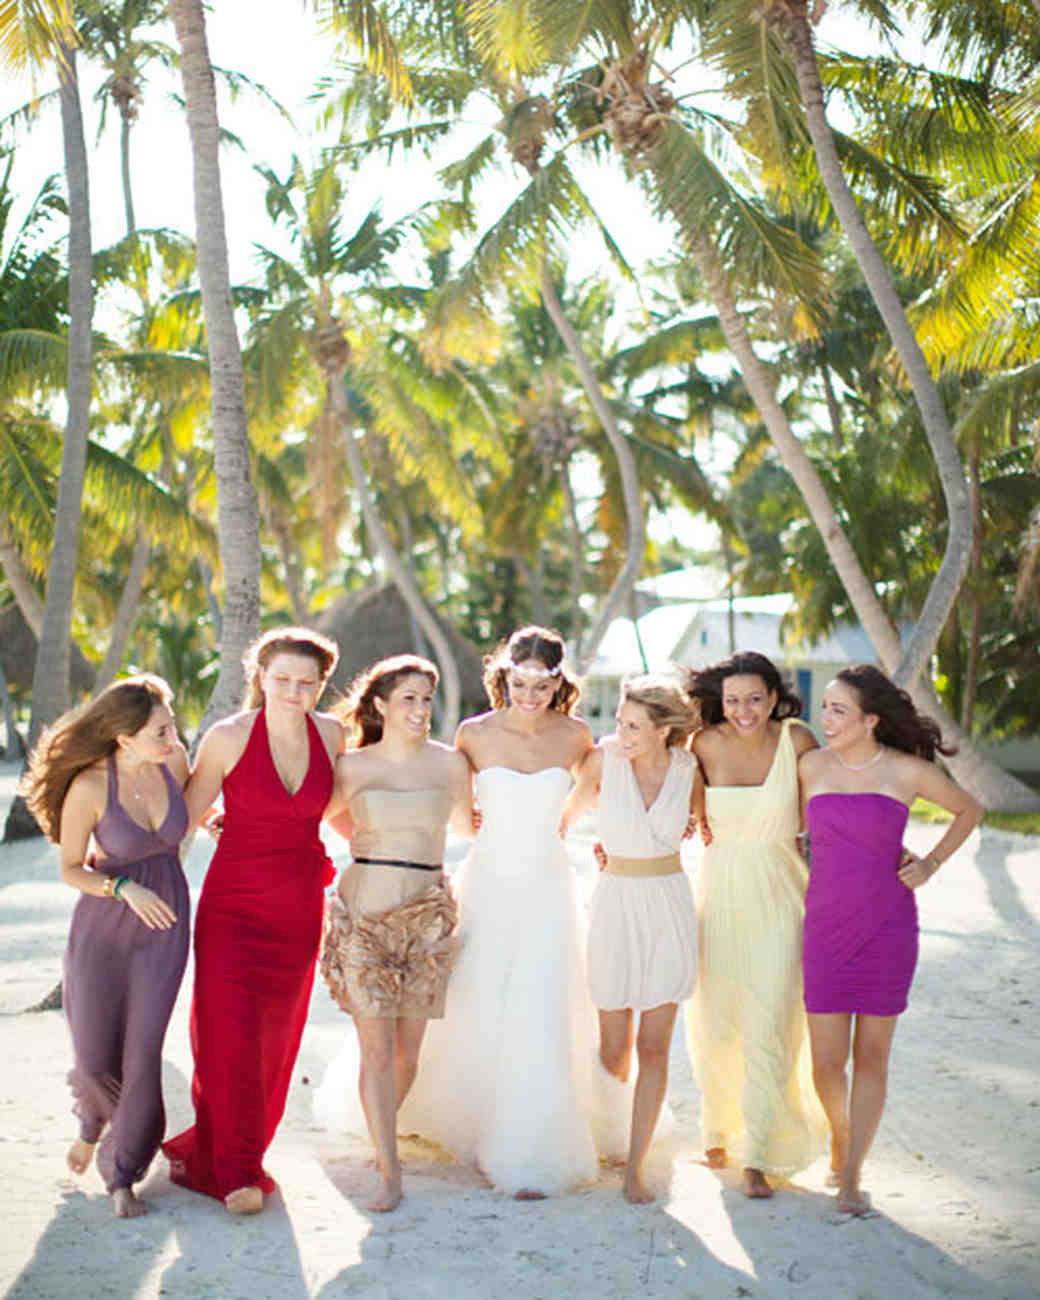 A Vibrant Beach Destination Wedding in Florida | Martha Stewart Weddings